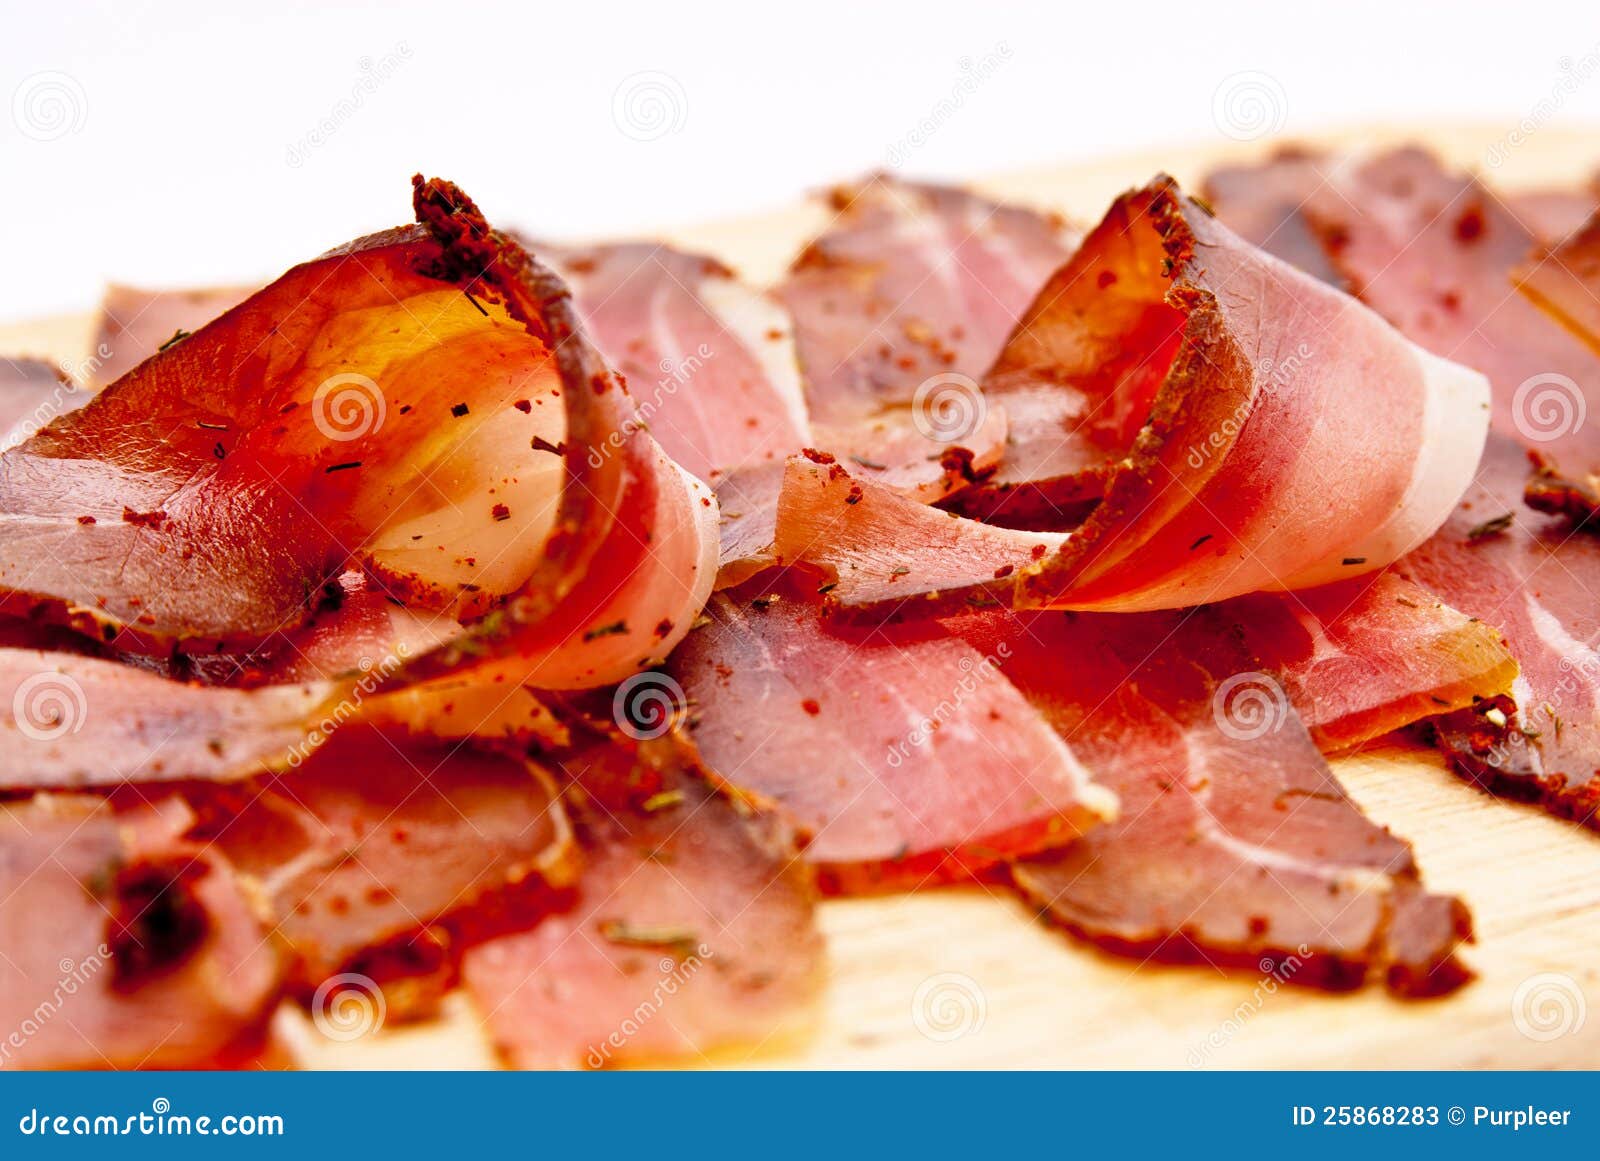 bacon jummp